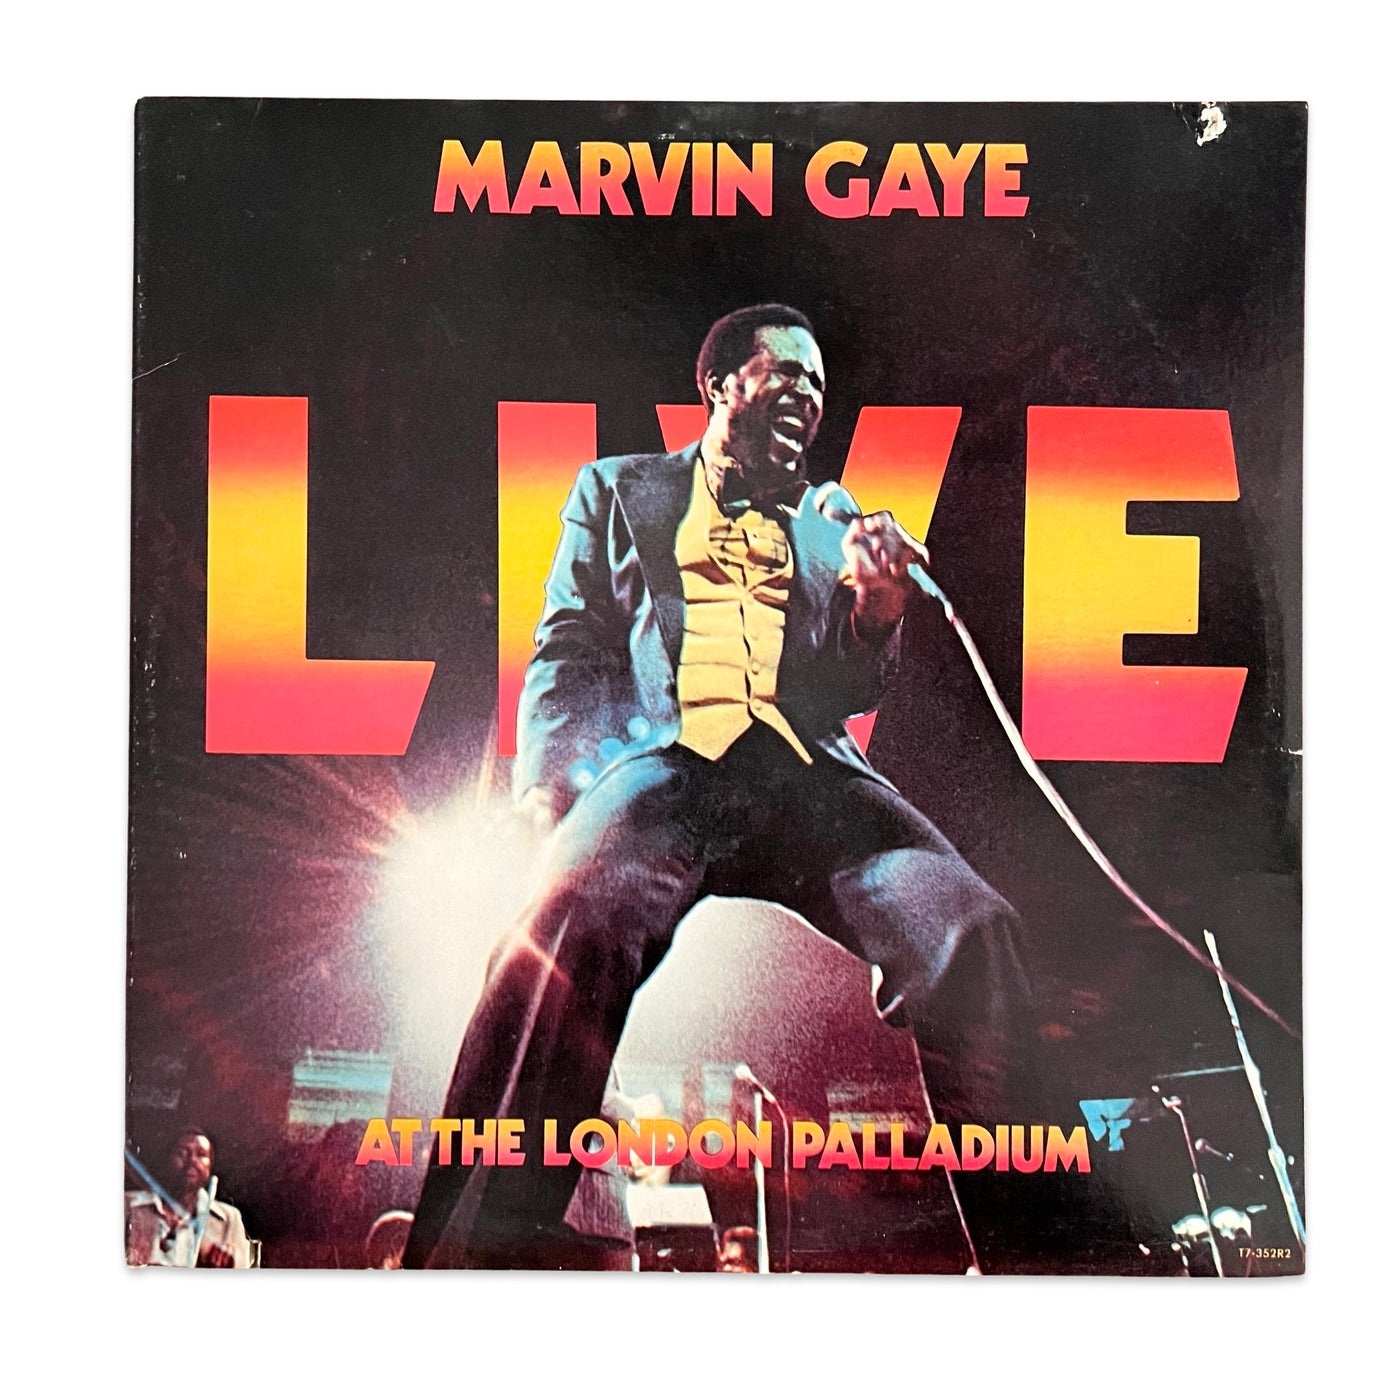 Marvin Gaye – Marvin Gaye Live At The London Palladium - 1977 German Press